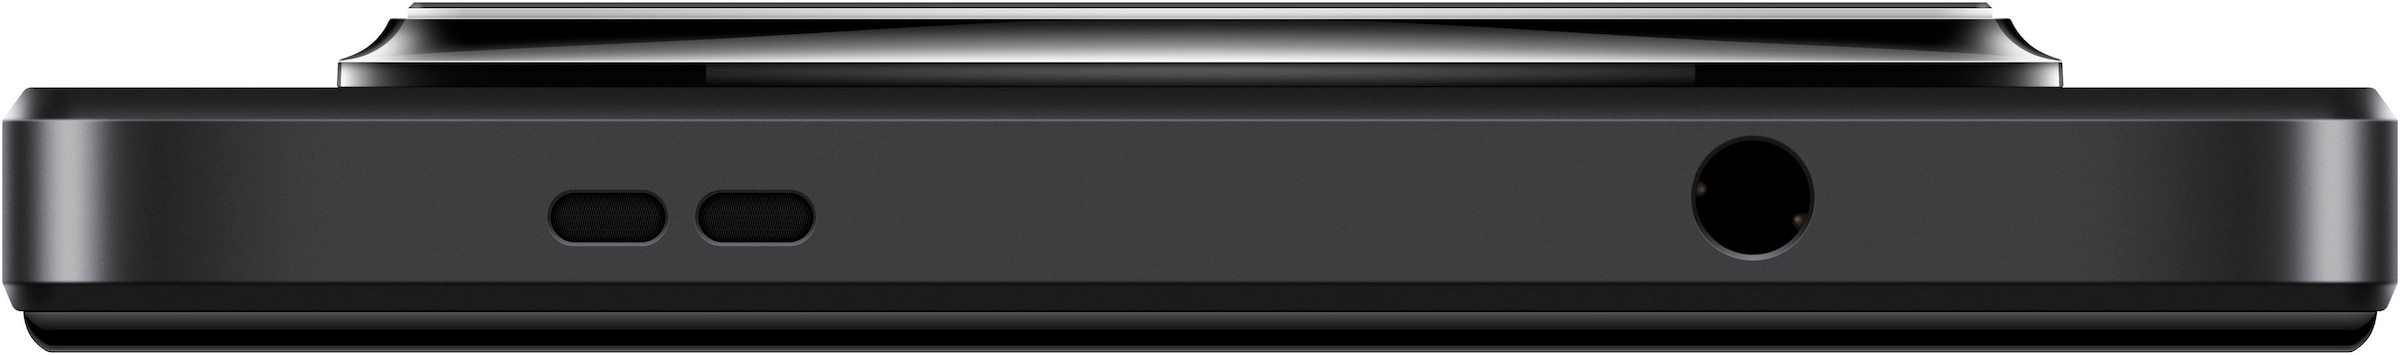 Xiaomi Smartphone »Redmi A3 128GB«, Mitternachtsschwarz, 17,04 cm/6,71 Zoll, 128 GB Speicherplatz, 8 MP Kamera